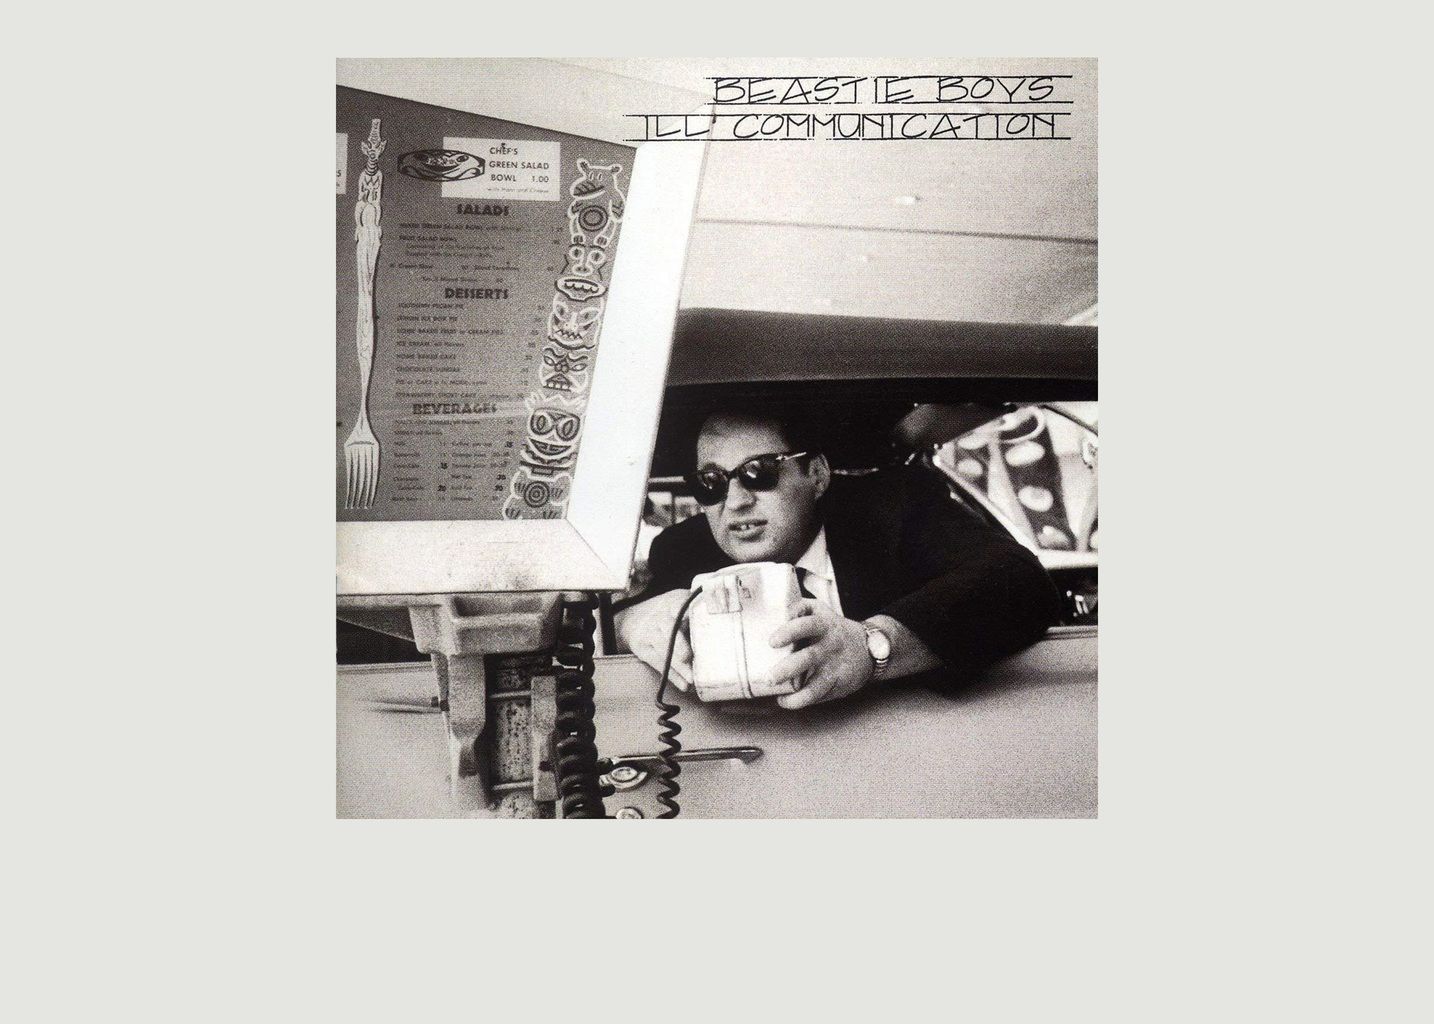 Ill Communication - Beastie Boys - La vinyl-thèque idéale